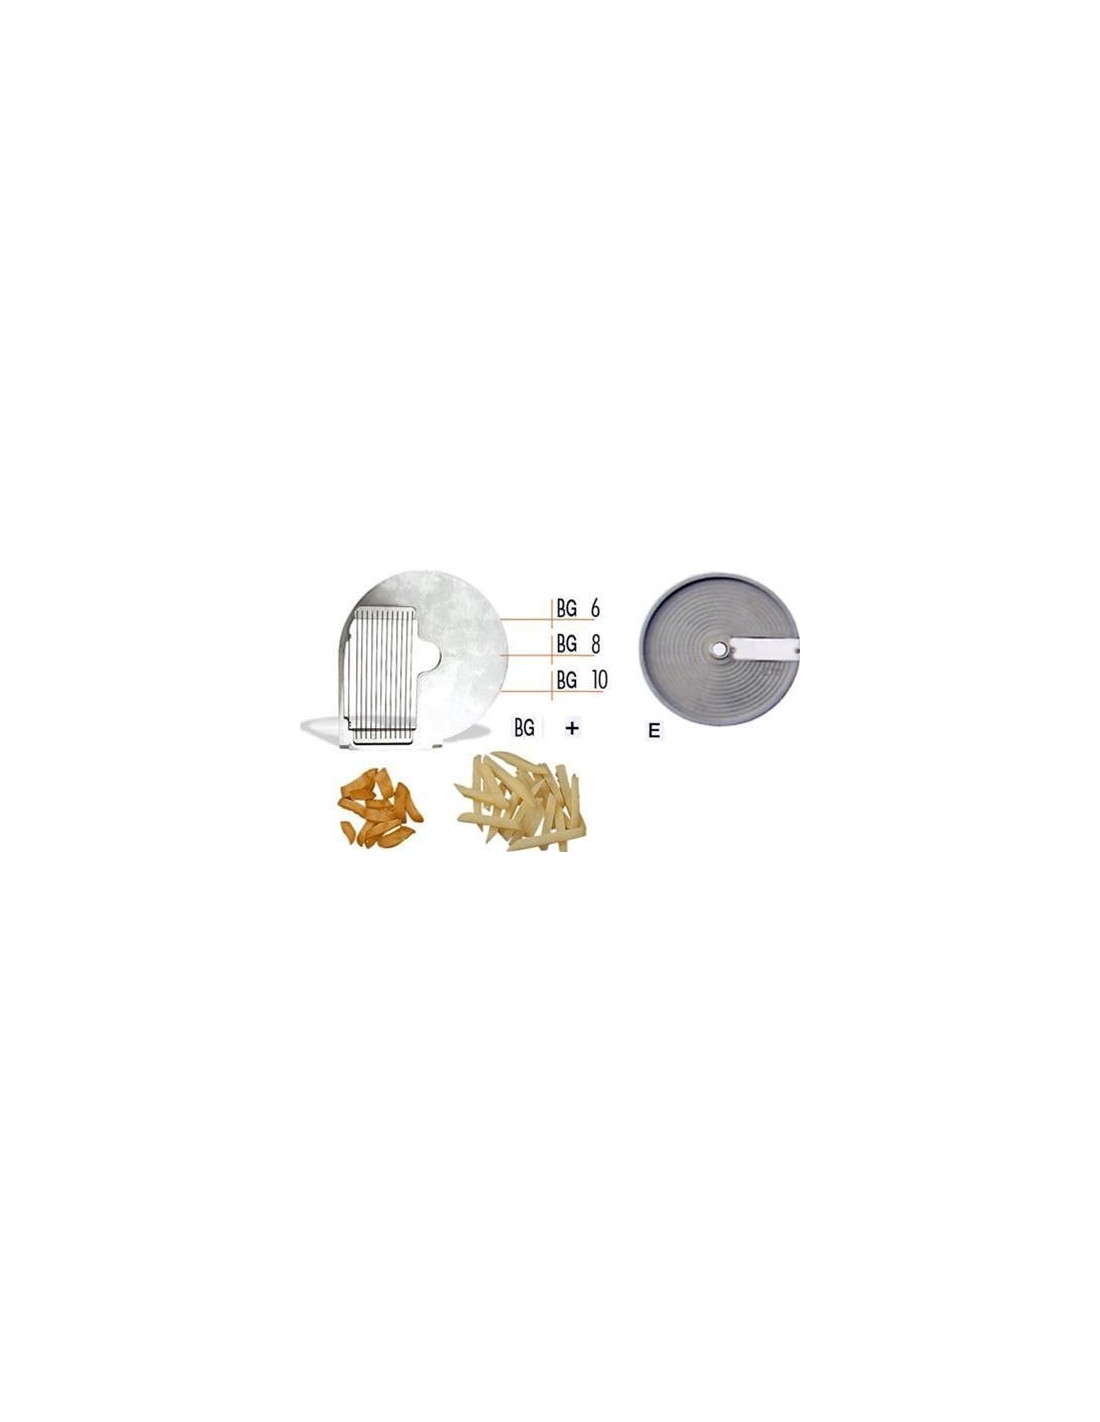 Disco tagliaverdura - per modello chef 600 - 800 - per BASTONCINI - da usare con disco mod. E - Taglio spessore mm 8